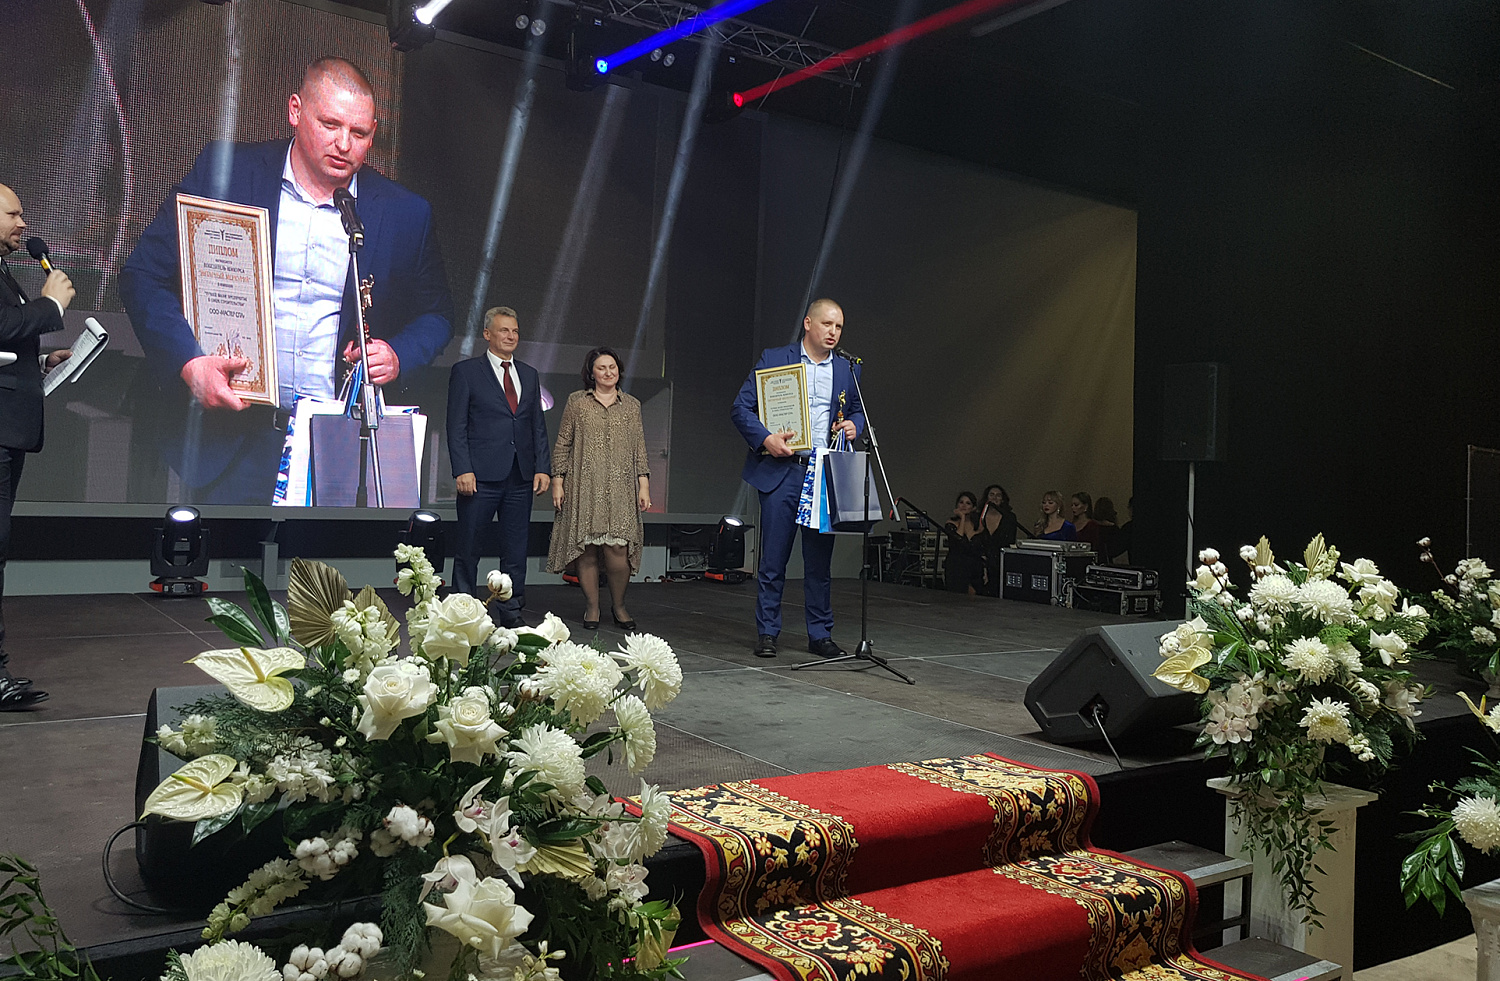 Мастер СПА победитель в региональной бизнес-премии «Янтарный Меркурий»